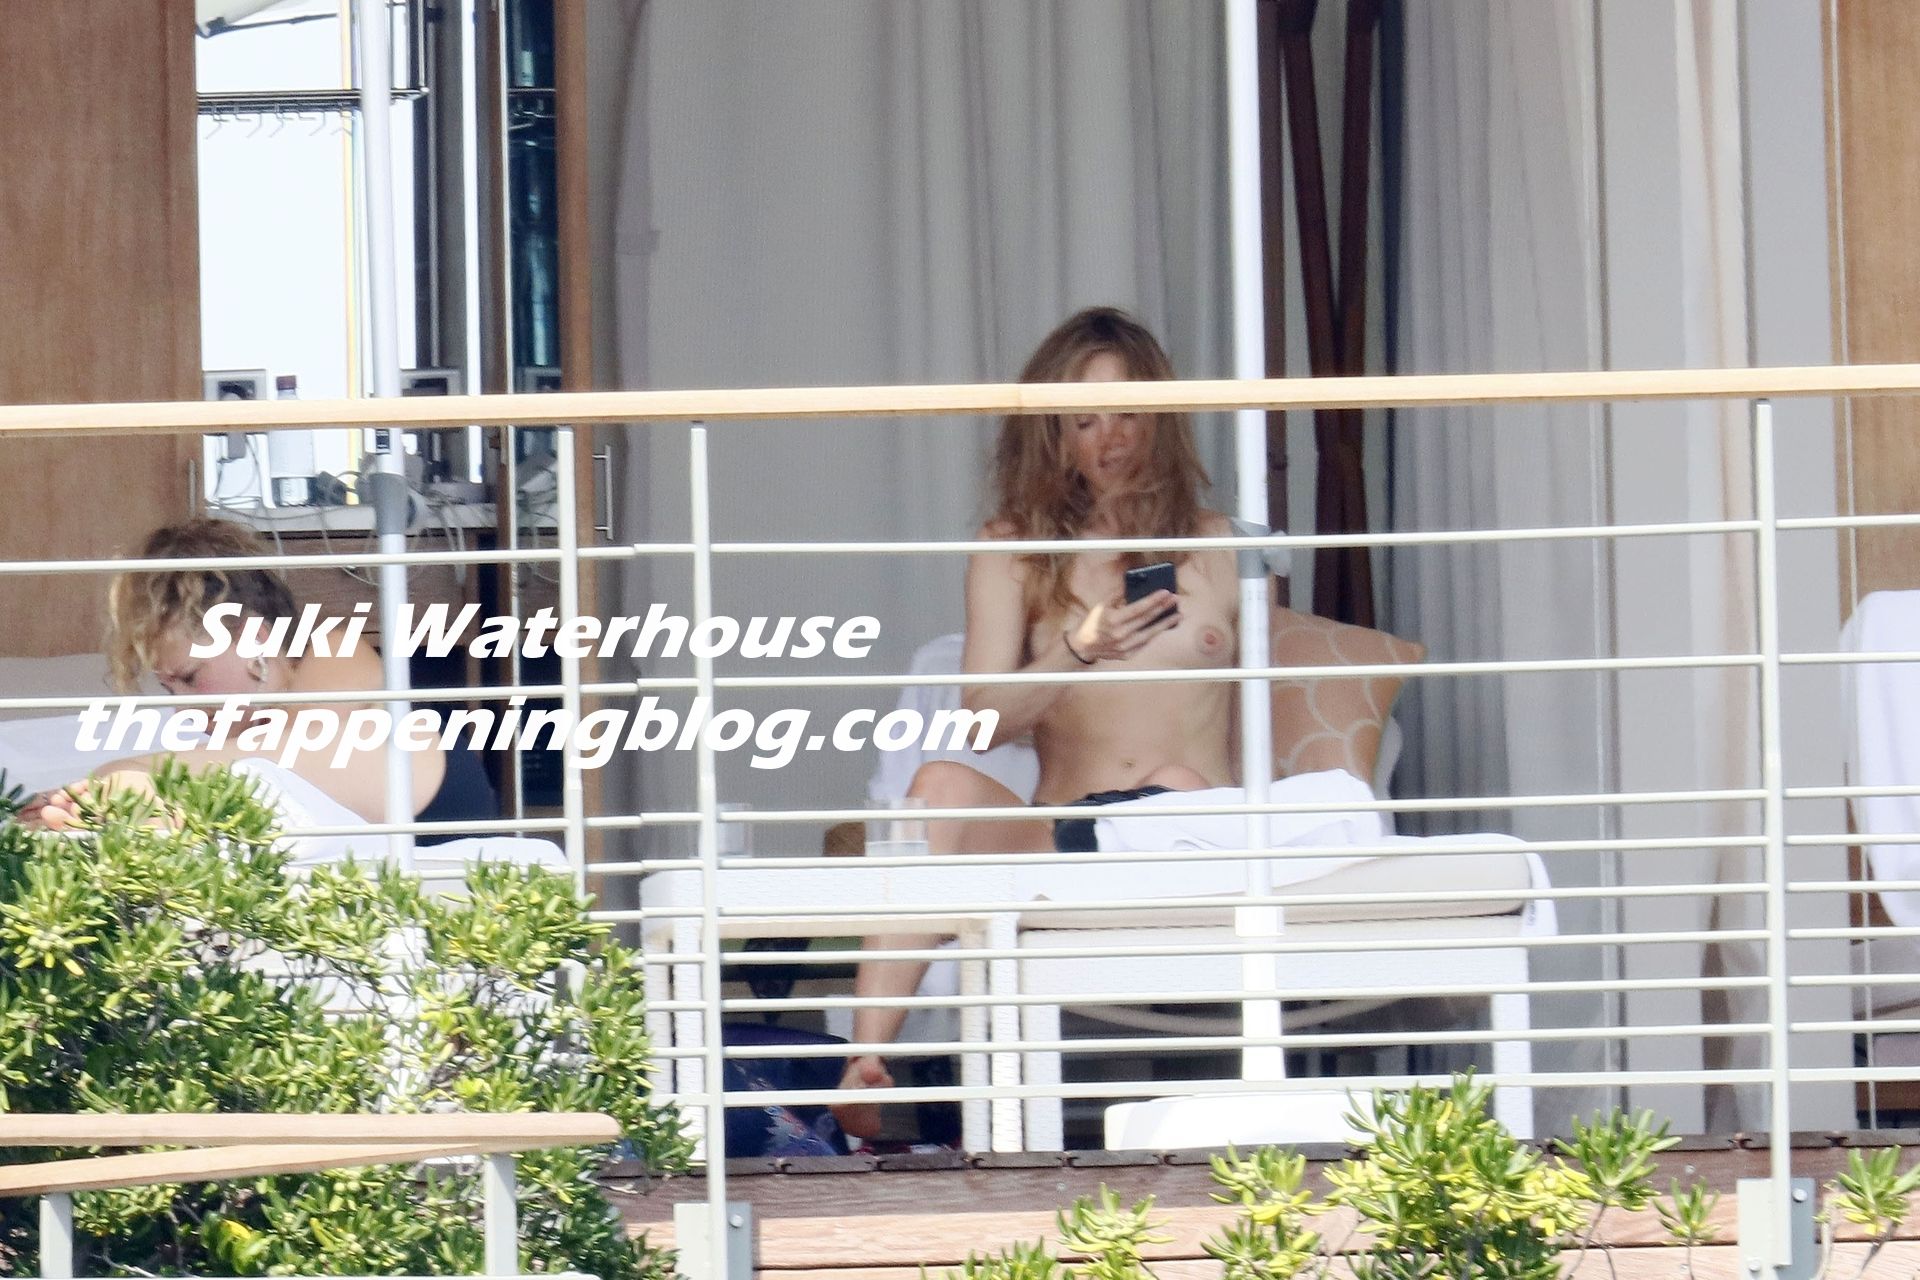 Suki Waterhouse Goes Nude While Sunbathing On Her Holiday